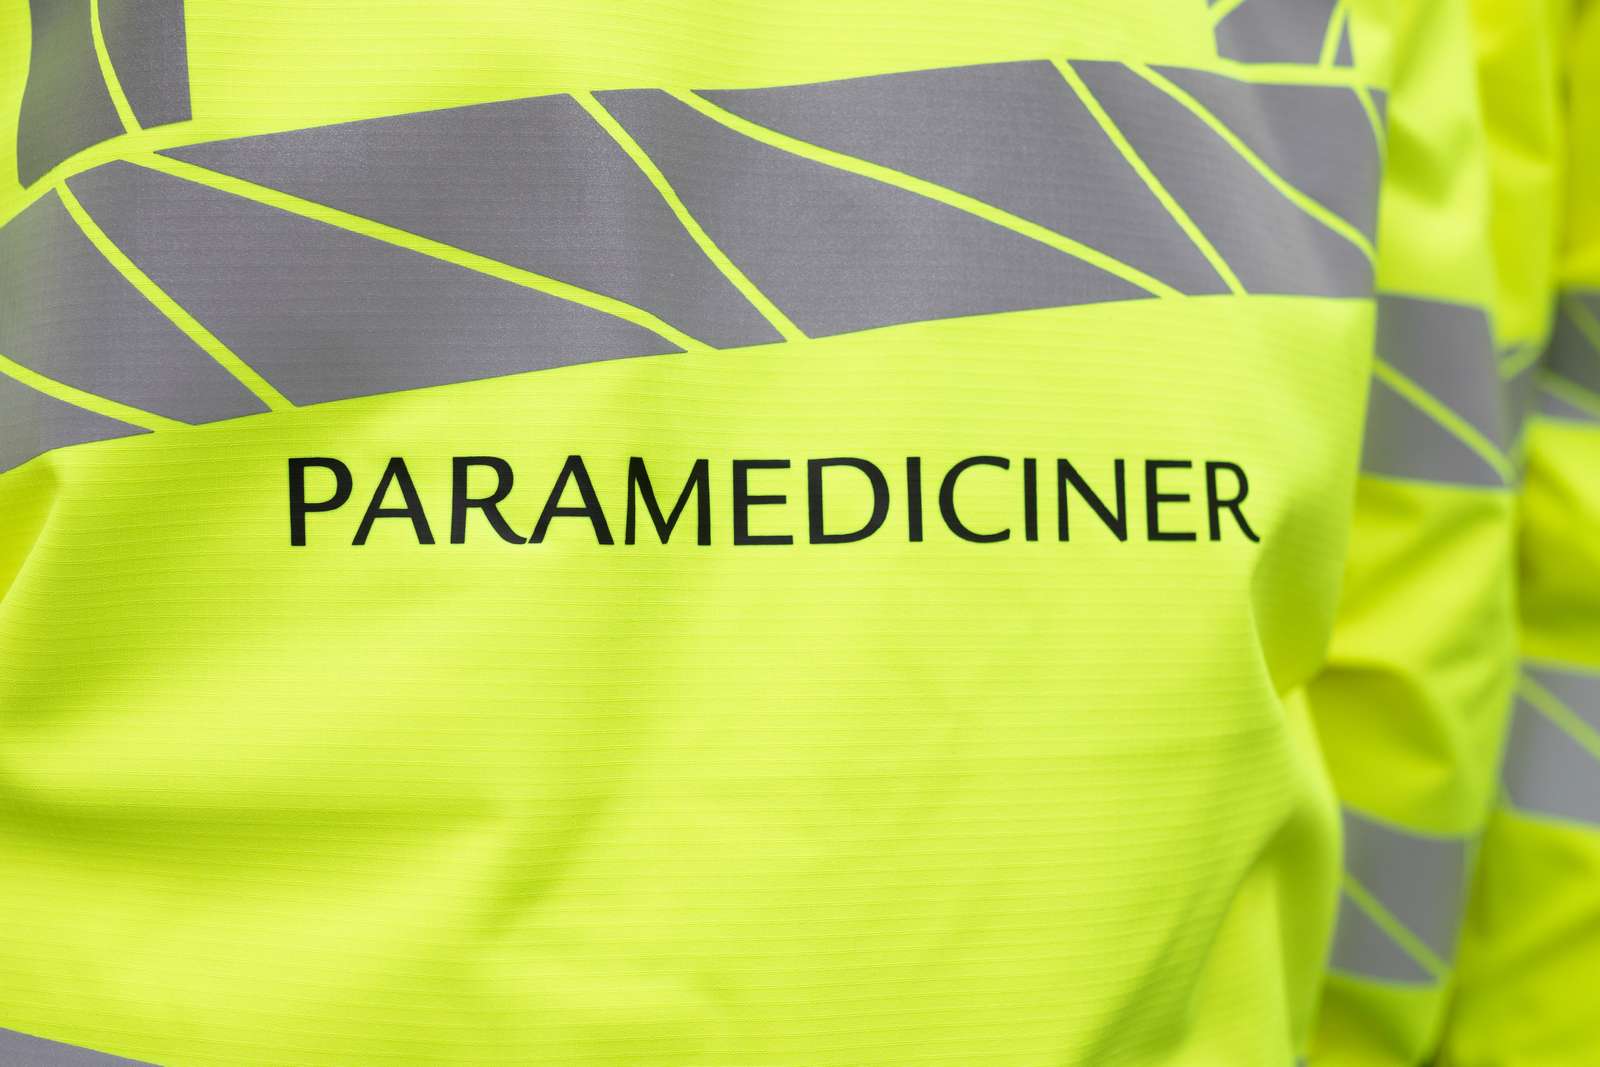 Paramediciner Ambulancer 02A9592